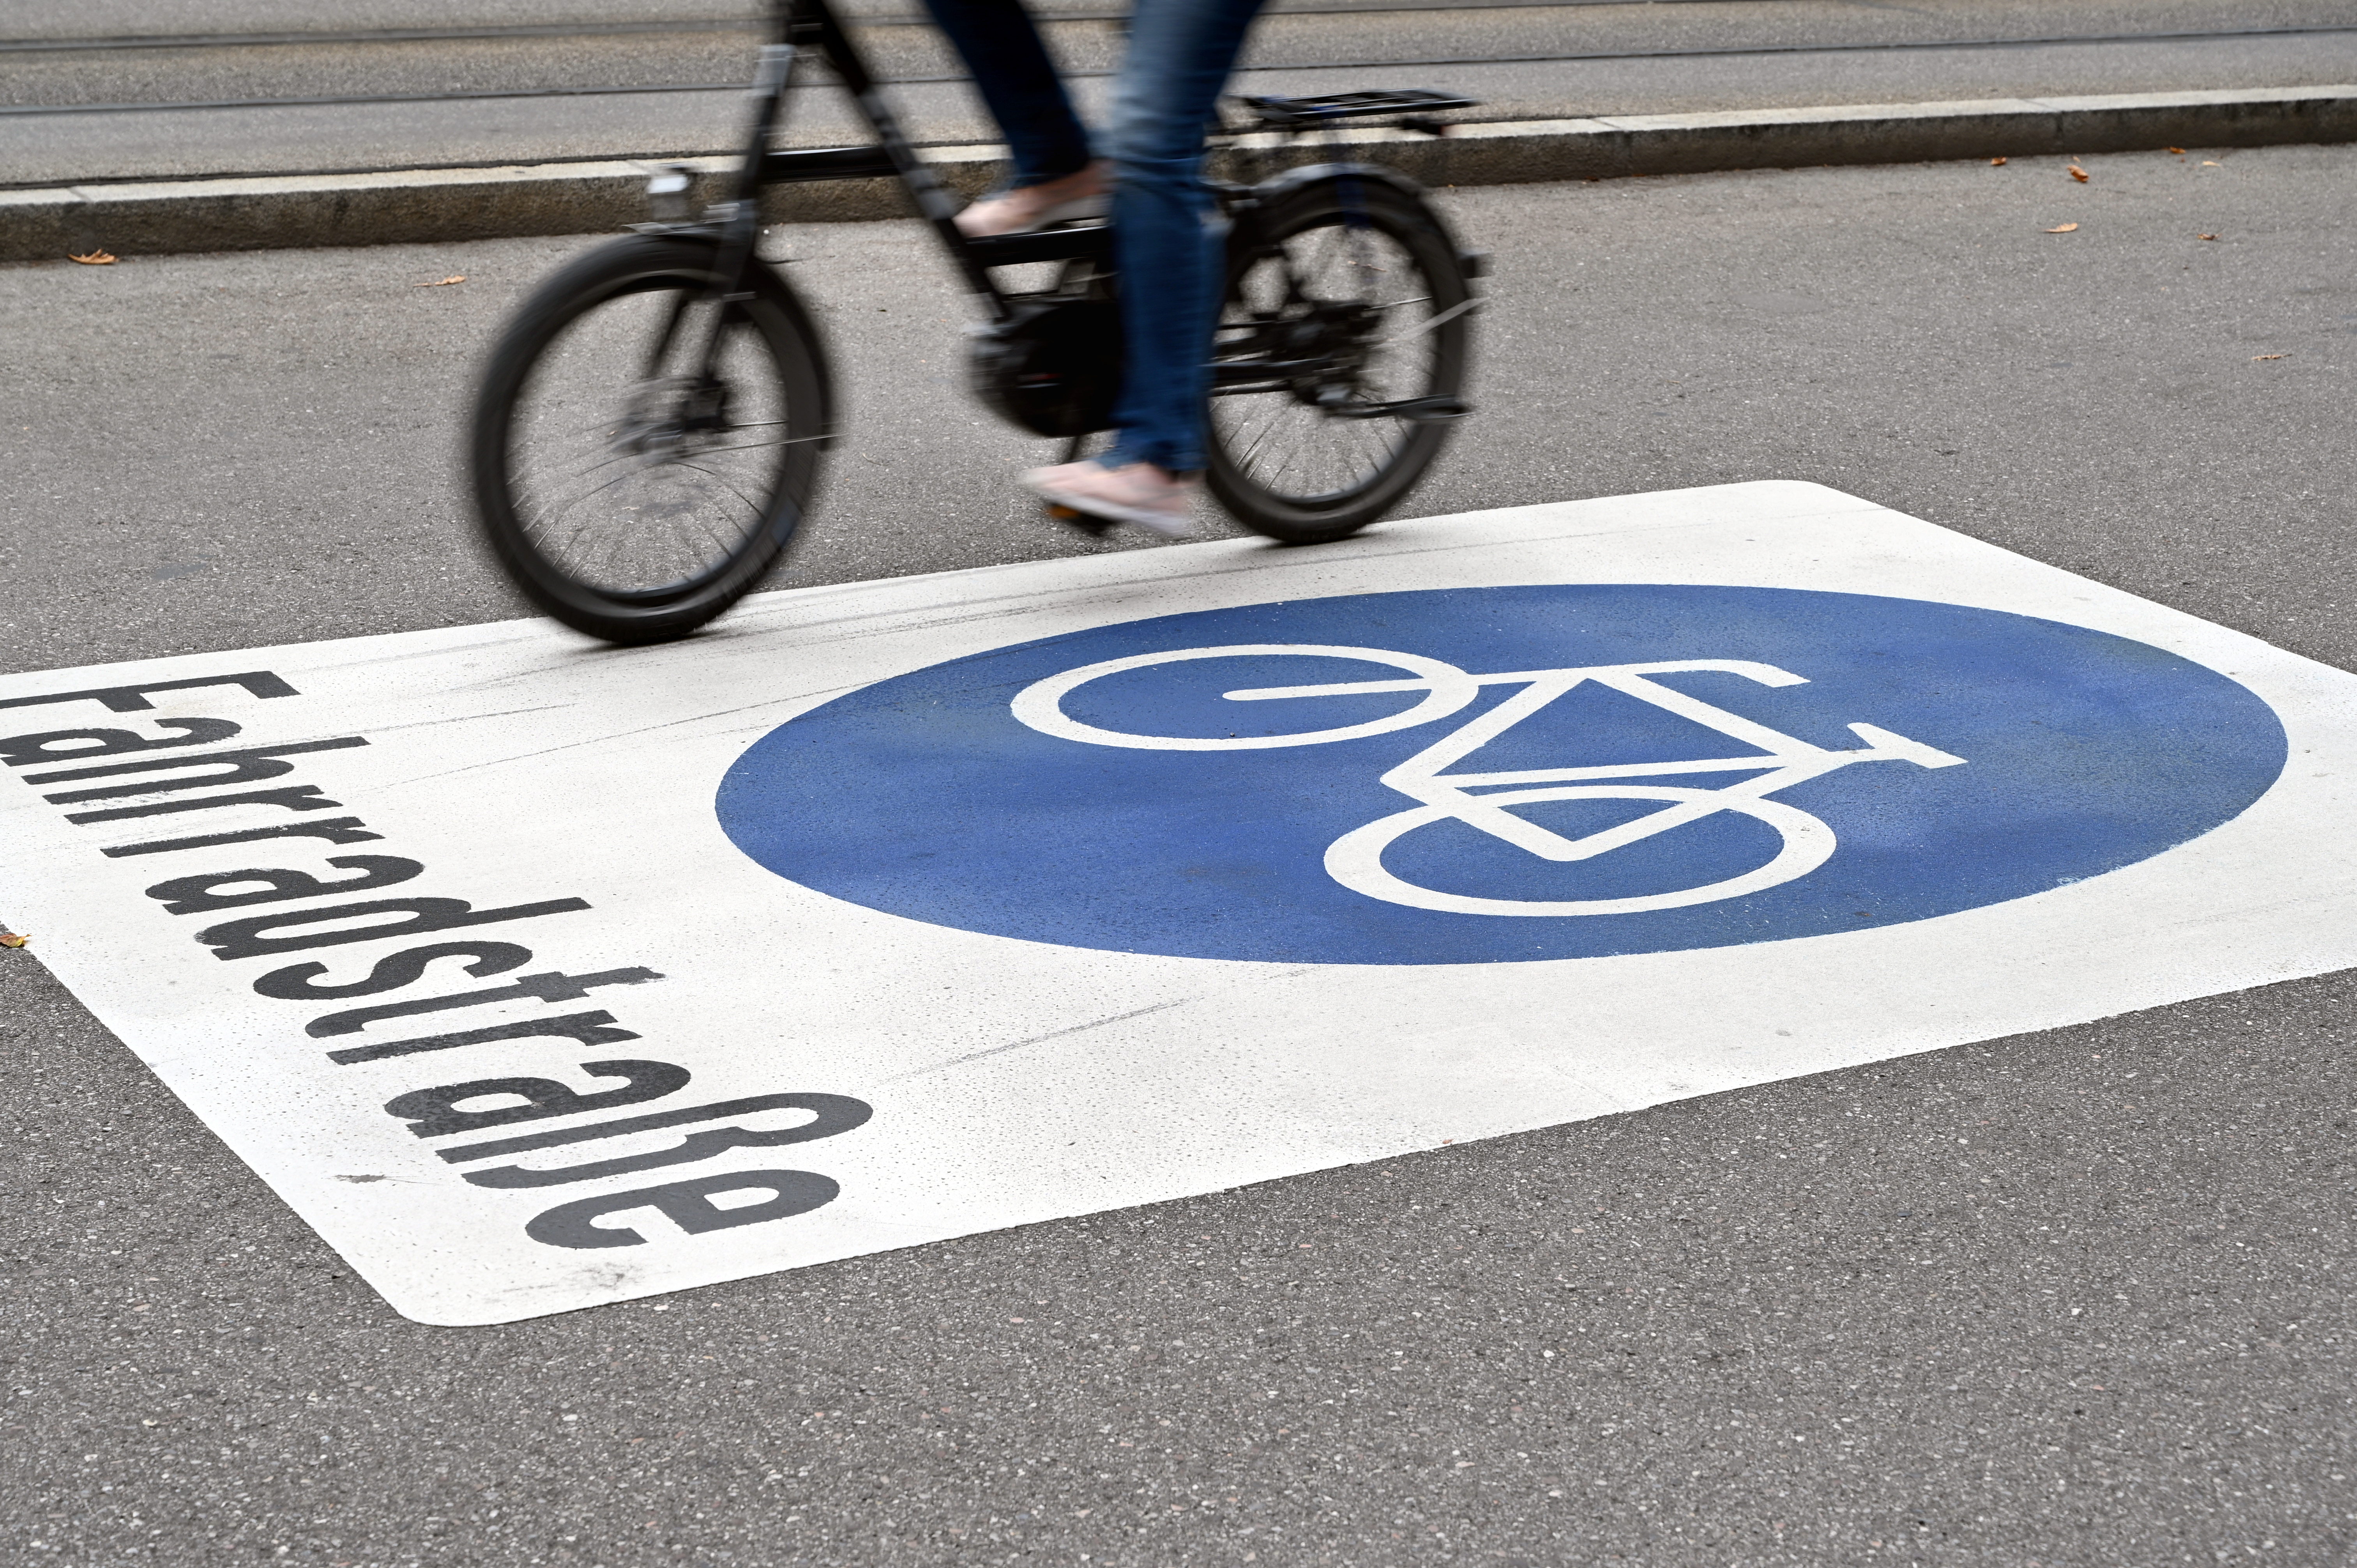 Auf einer Straße ist das Wort "Fahrradstraße" zu lesen, darüber ist ein blaues Radweg-Symbol gemalt. Ein Radfahrer fährt auf der Straße